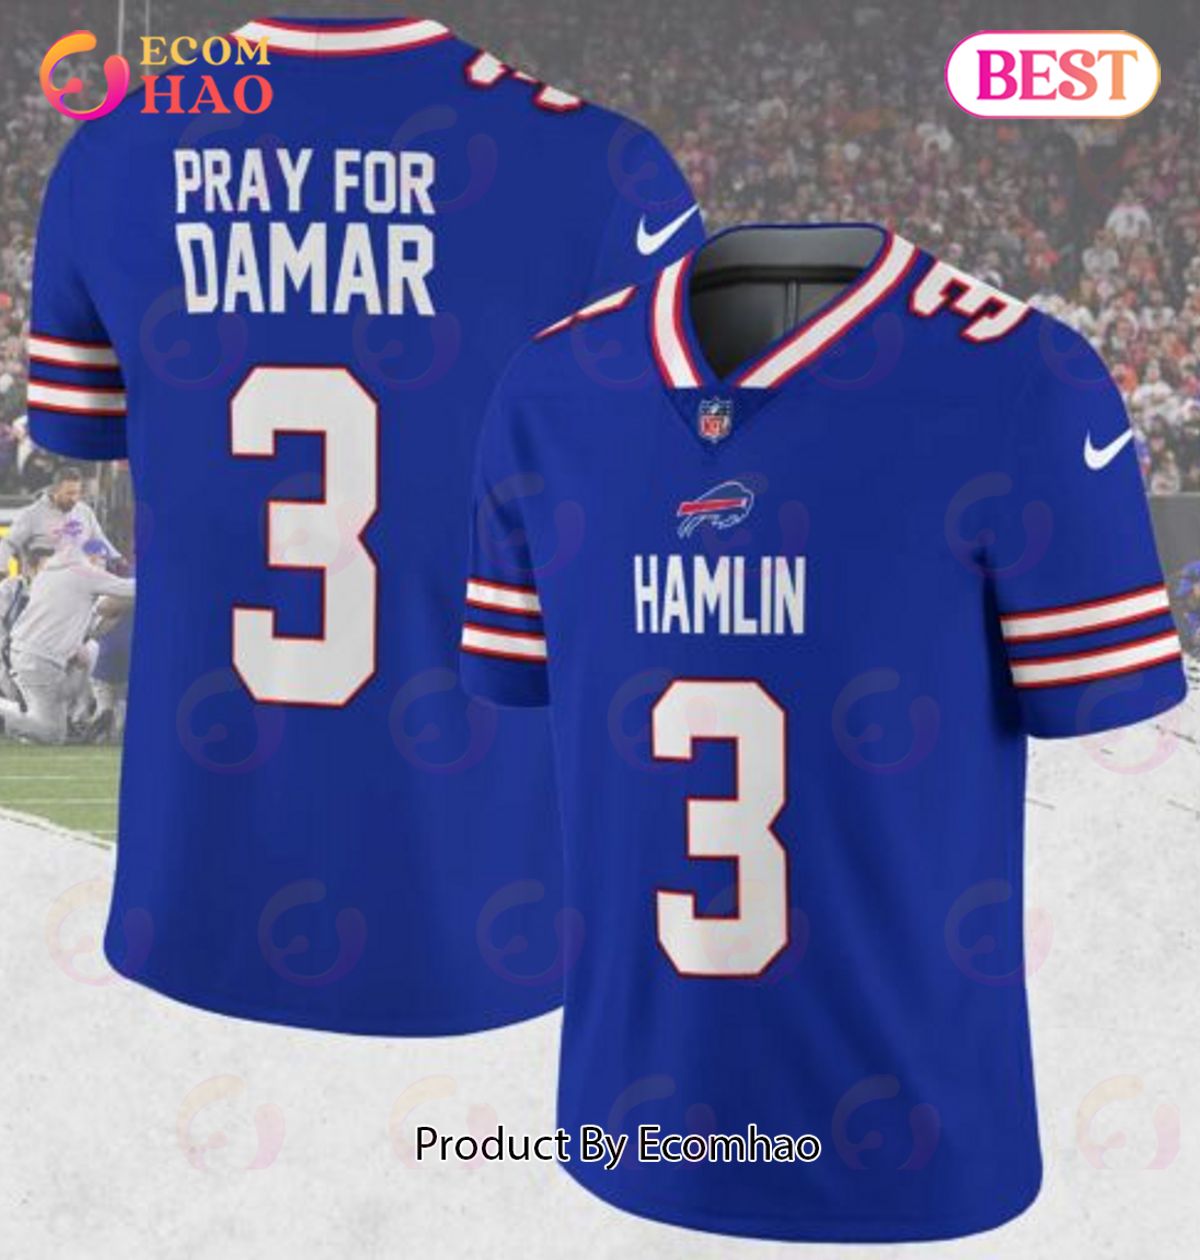 Pray For Damar Hamlin Buffalo Bills Jersey Game